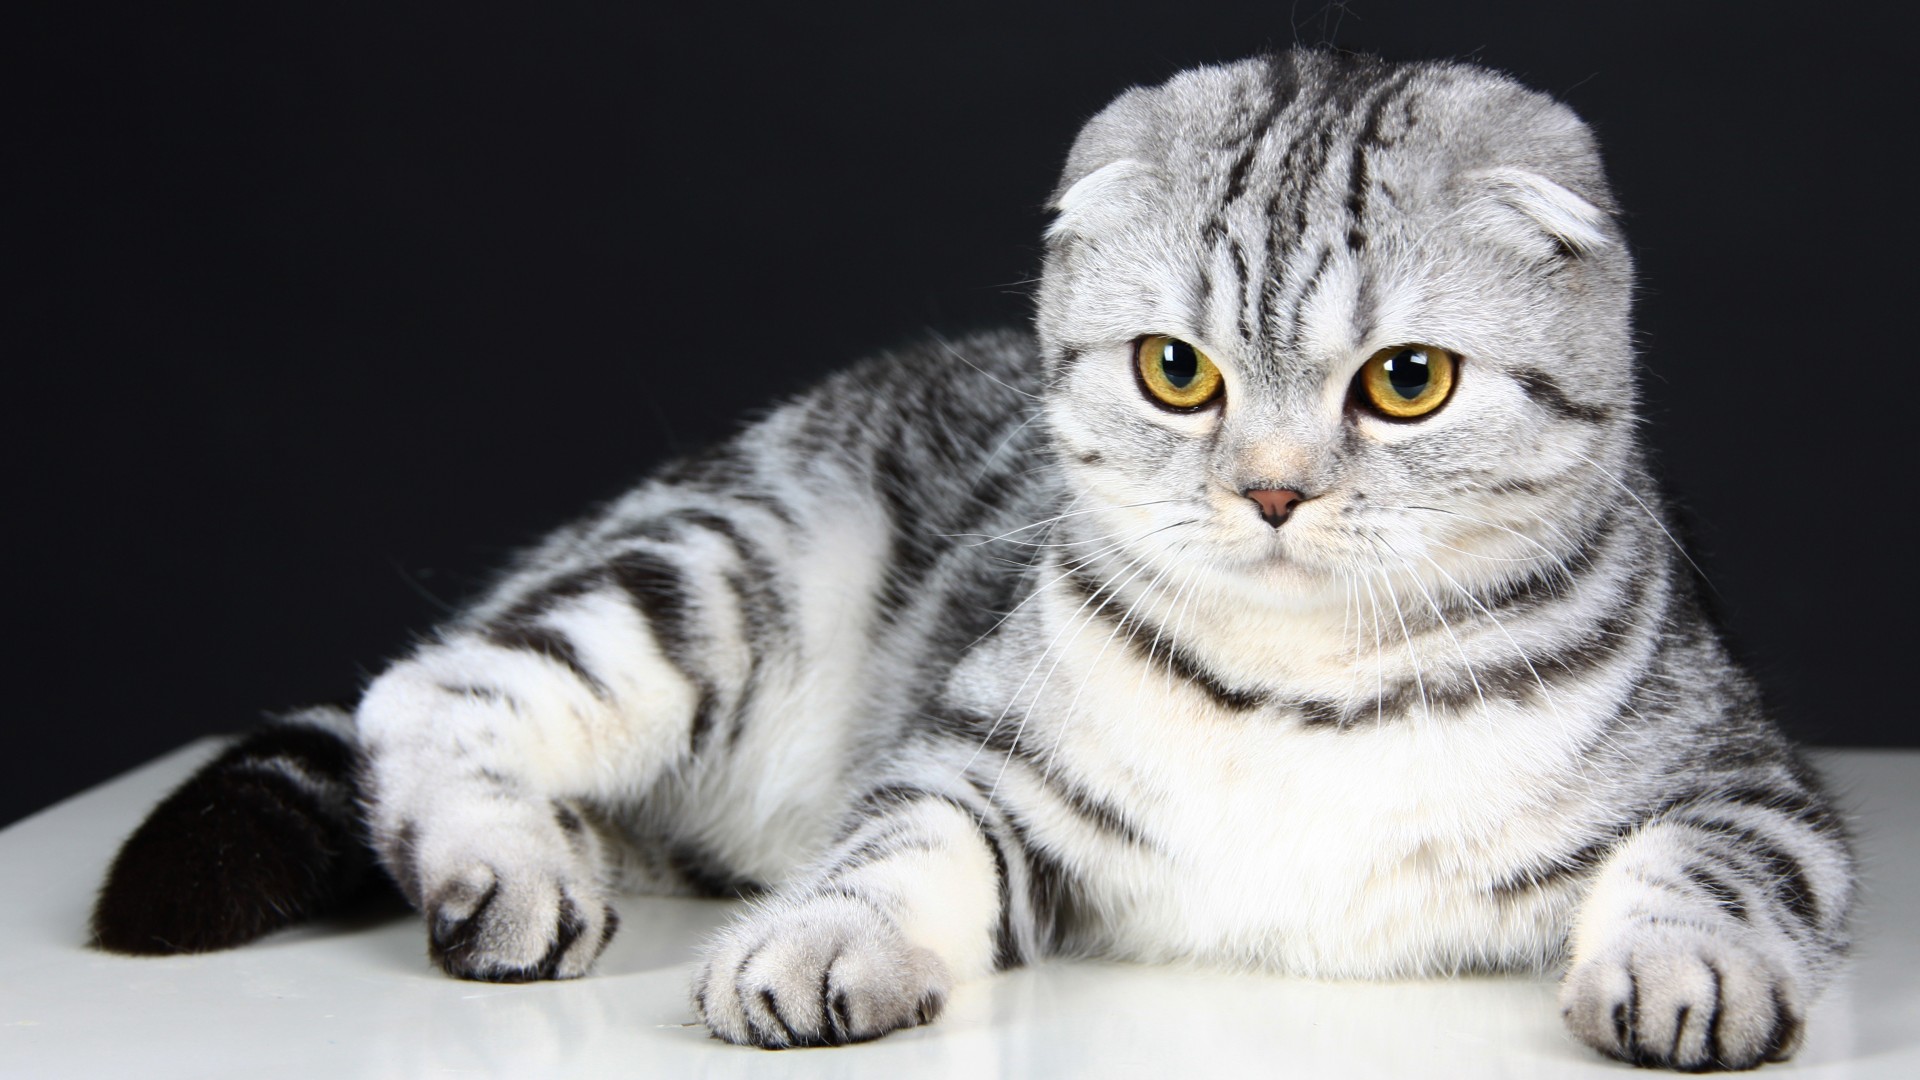 Scottish Fold, Cat, kitten, eyes, gray, wool, cute, animal, pet (horizontal)